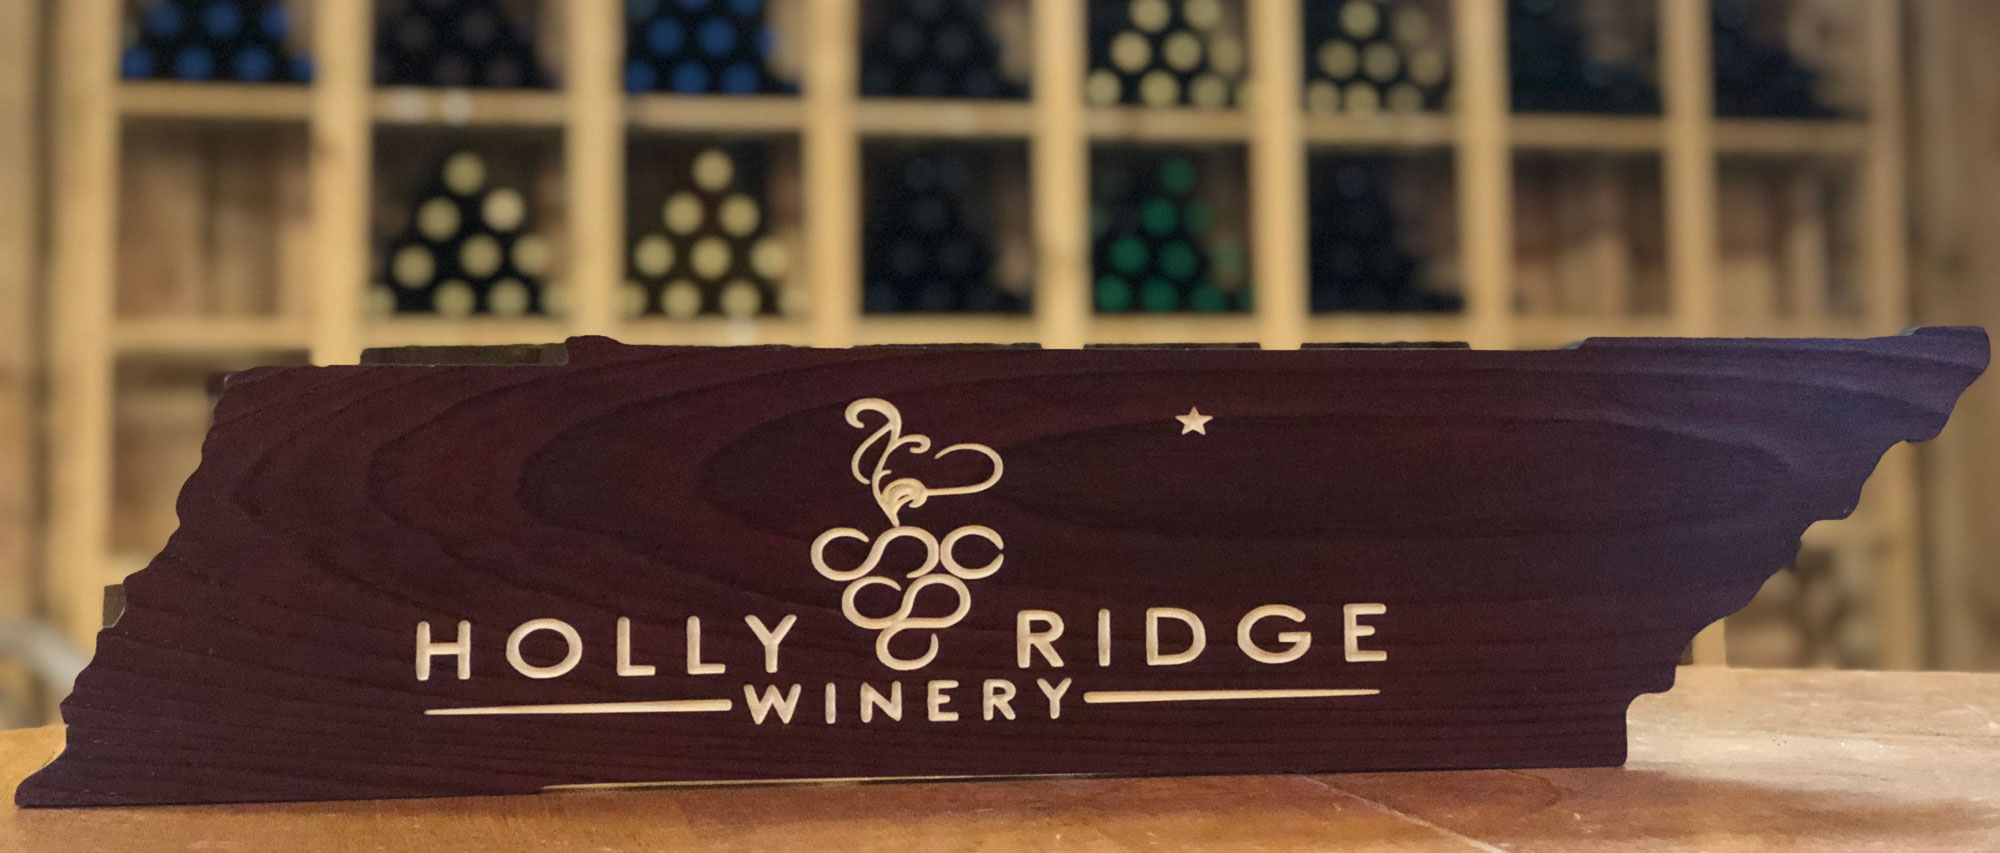 Holly Ridge Winery sign